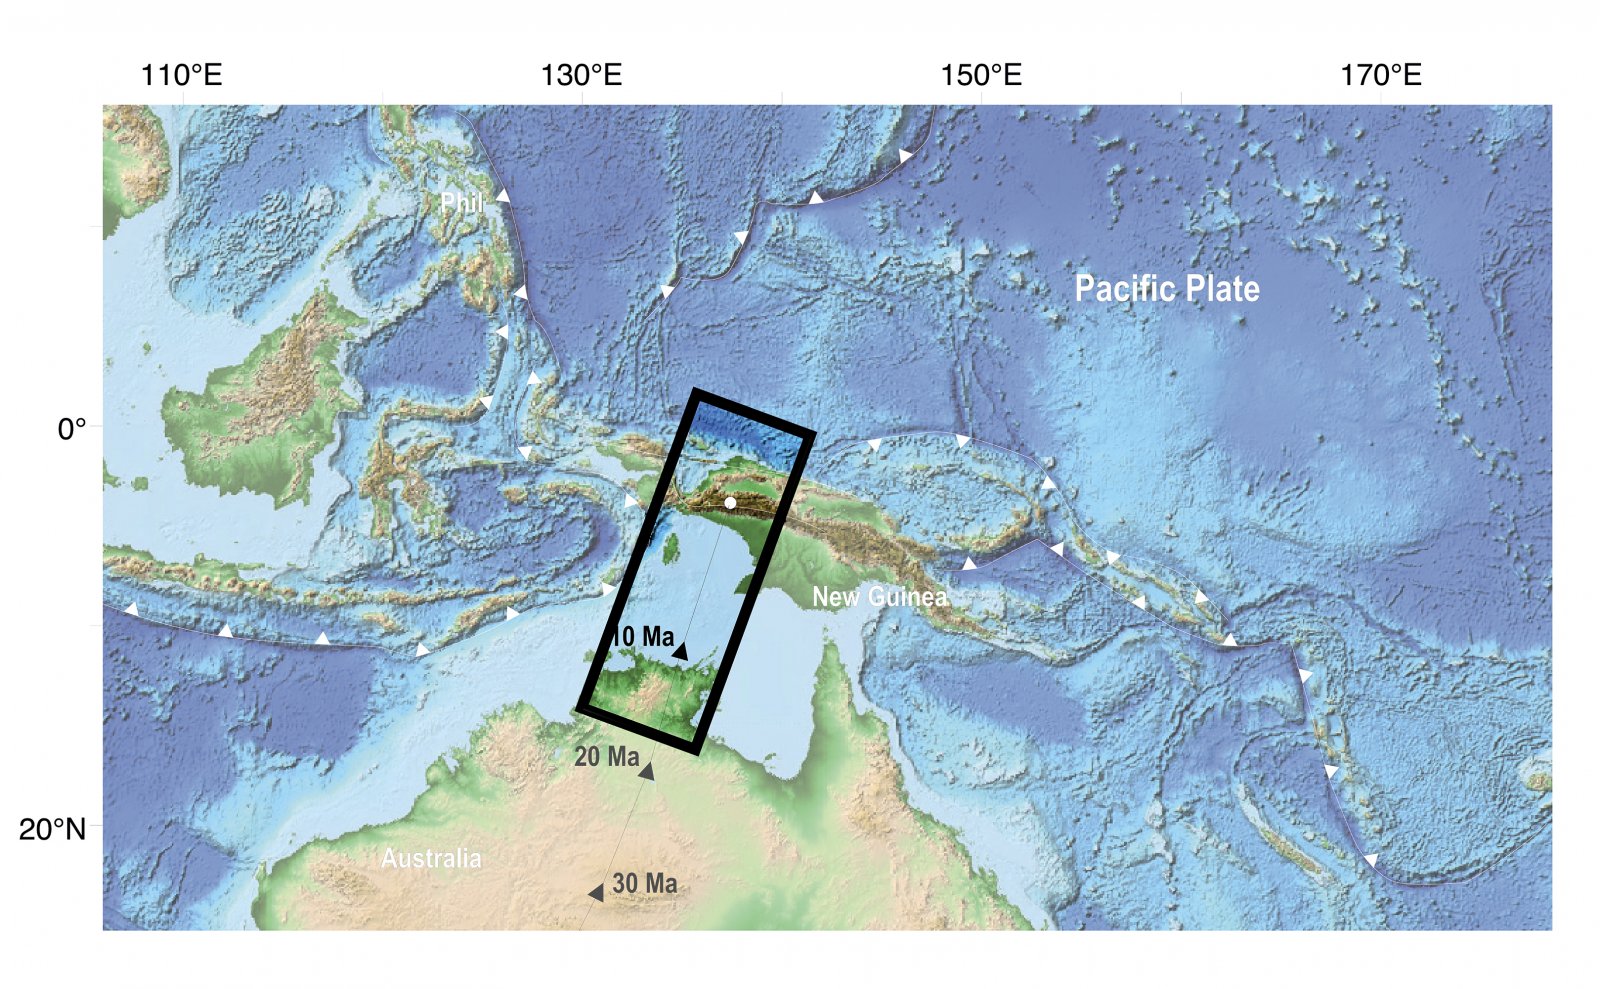 Hoogtekaart van gedeelte Australië, Nieuw-Guinea en Indonesië, met breuklijnen en omkadering van het onderzochte gebied